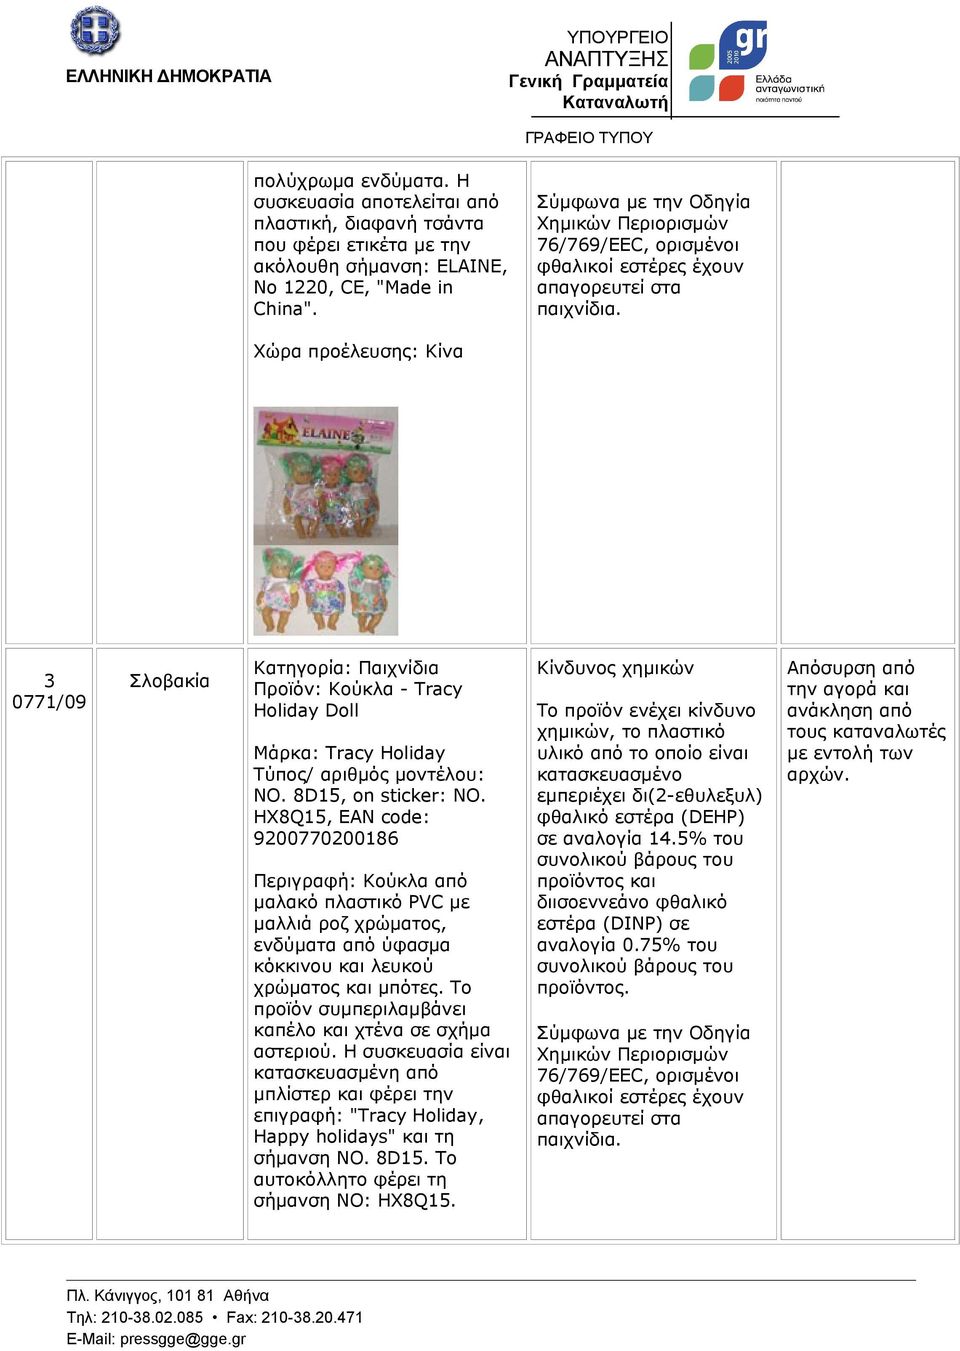 3 0771/09 Σλοβακία Κατηγορία: Παιχνίδια Προϊόν: Κούκλα - Tracy Holiday Doll Μάρκα: Tracy Holiday NO. 8D15, on sticker: NO.